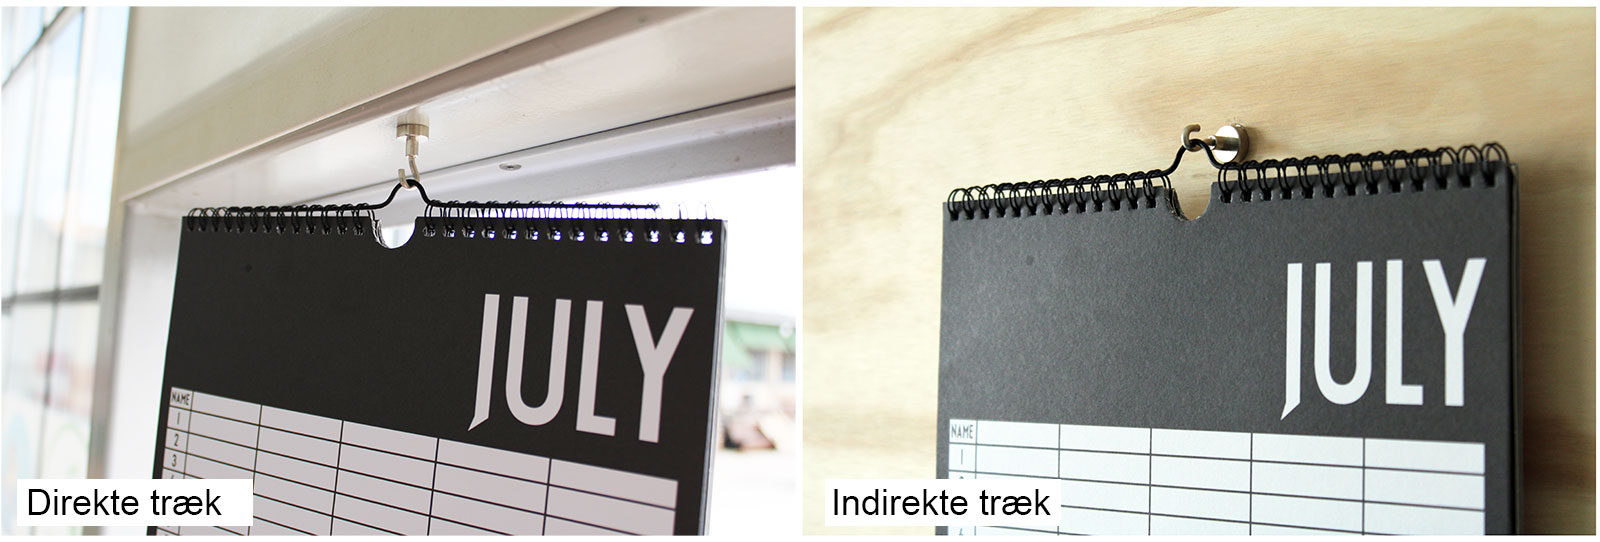 Der er forskel på, om din kalender hænger i samme retning som magneten eller en anden retning end magneten